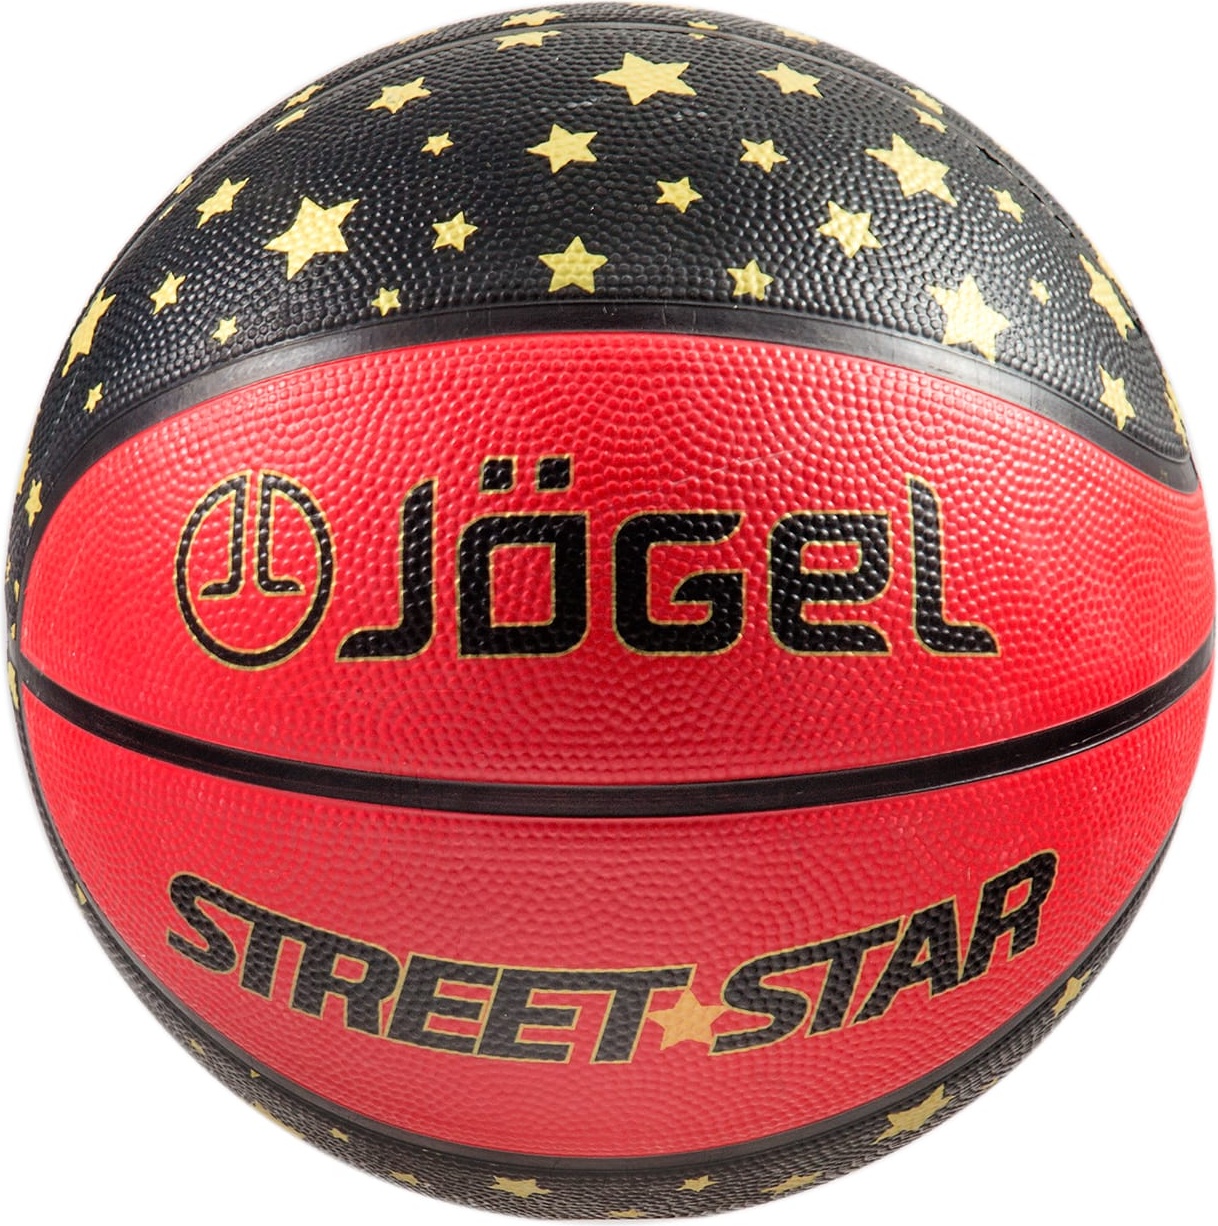 Баскетбольный мяч Jogel Street Star №7 red - отзывы покупателей на Мегамаркет